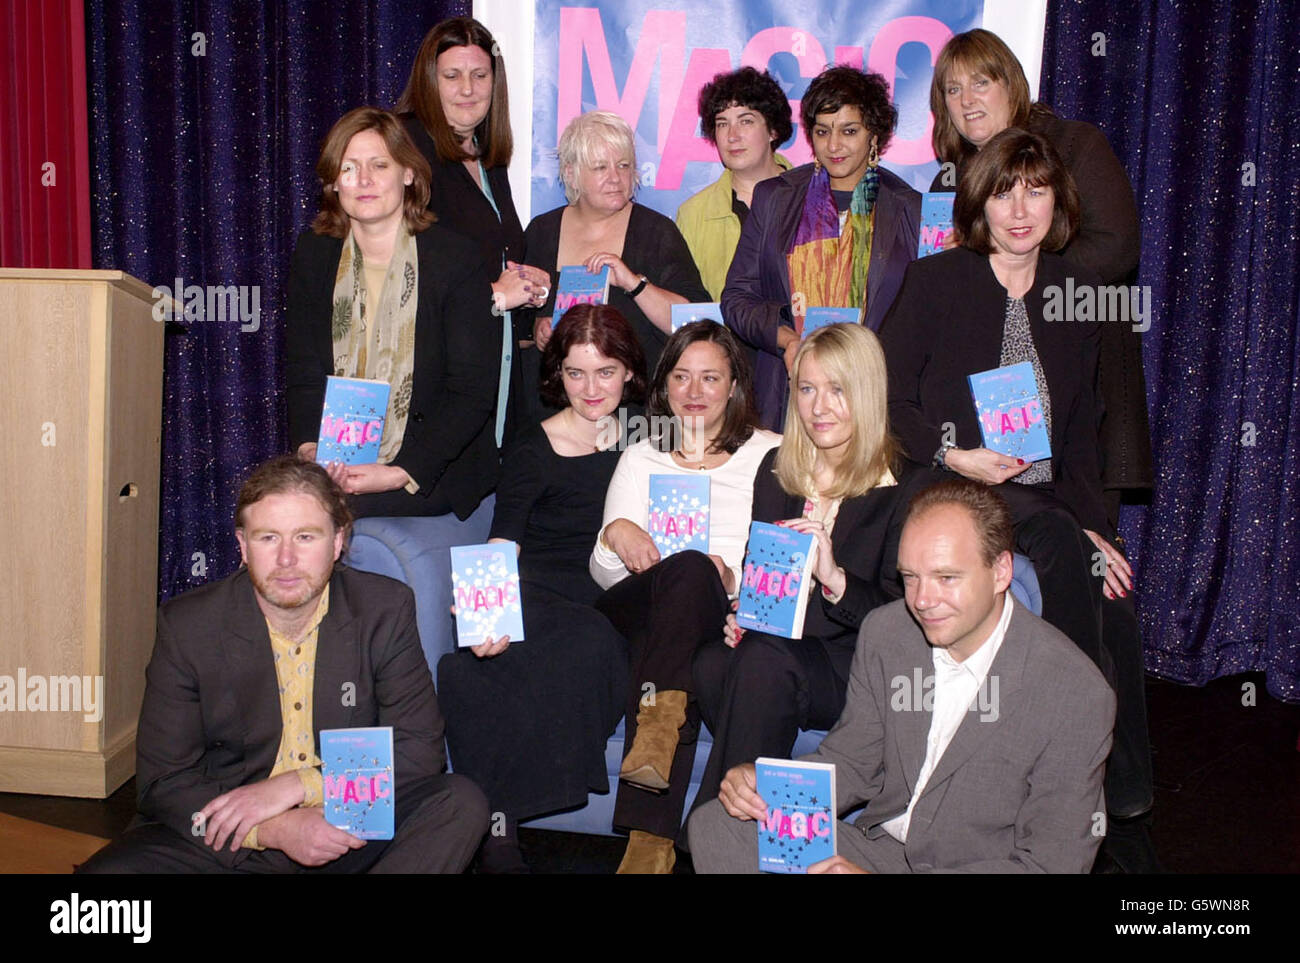 Magic book press launch Stock Photo